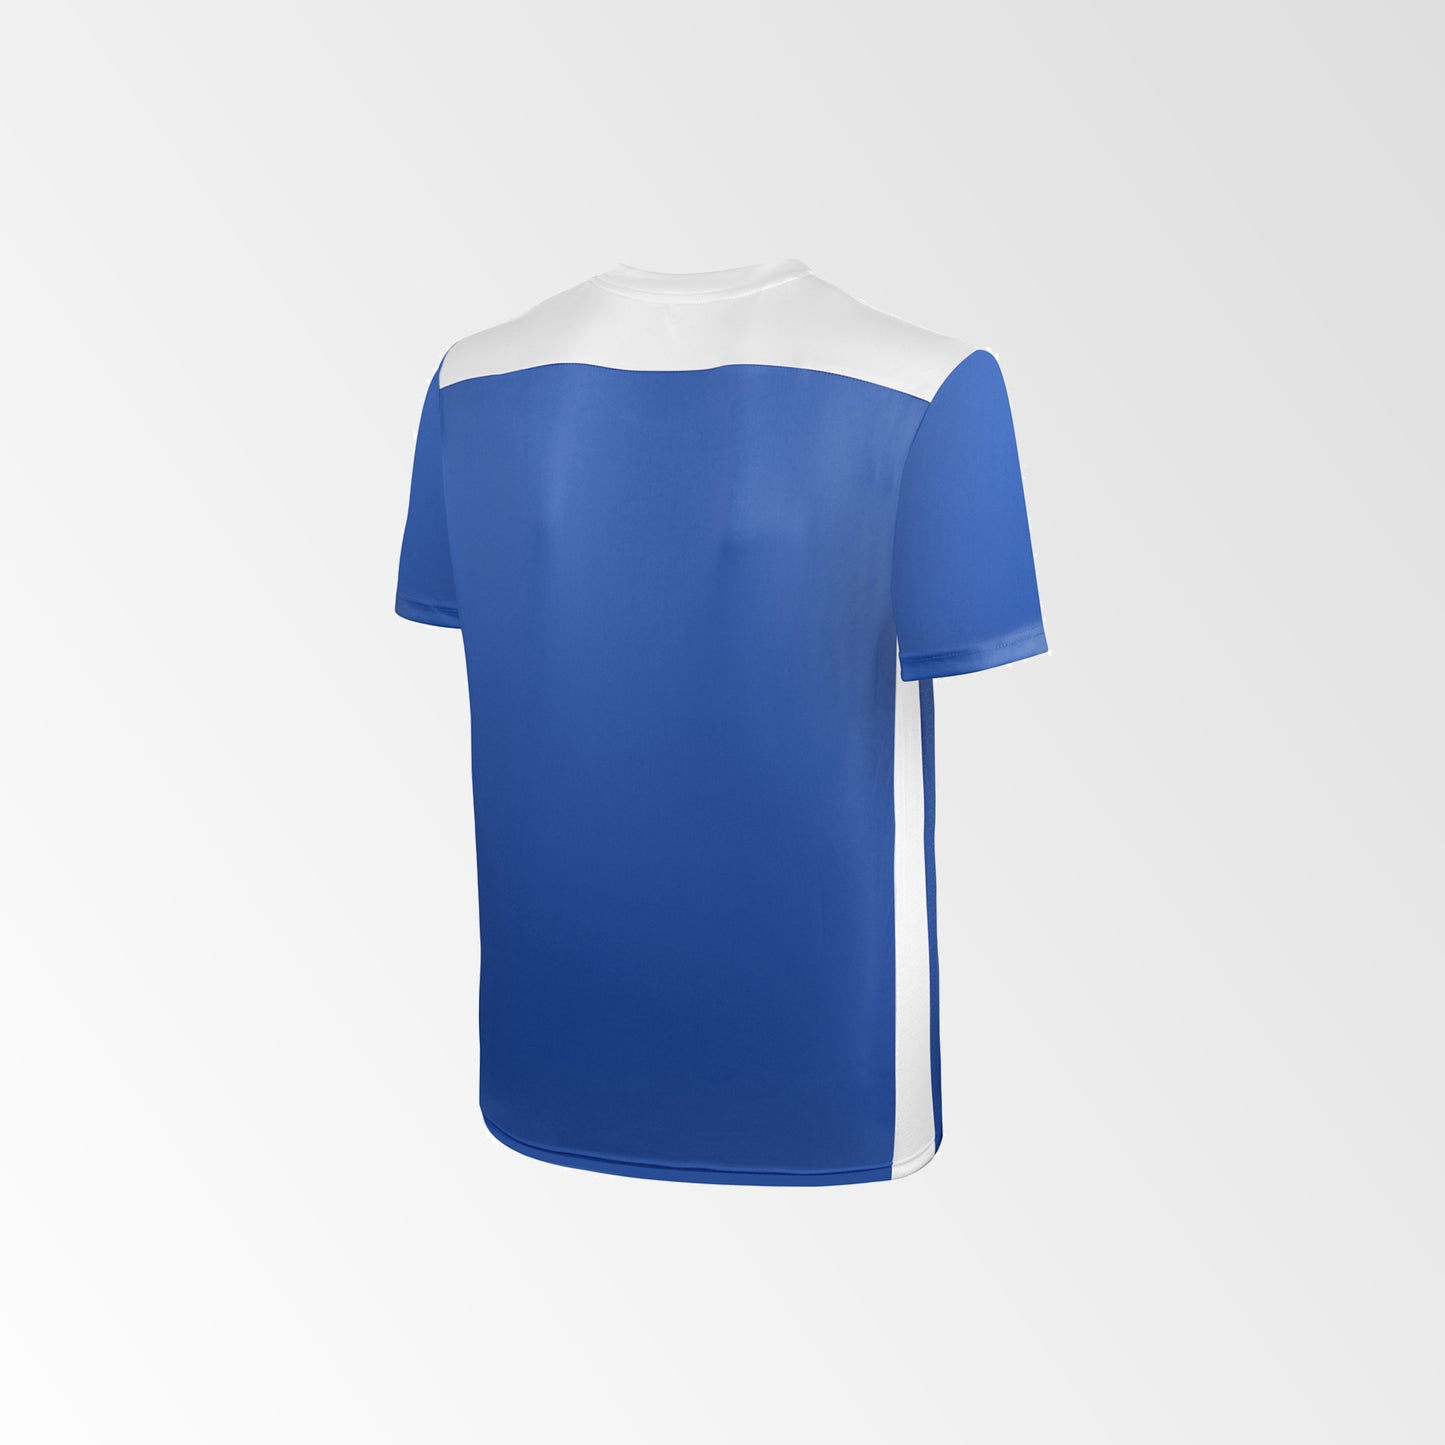 Camiseta de Futbol y Short Modelo Betis Azul-Rey Blanco